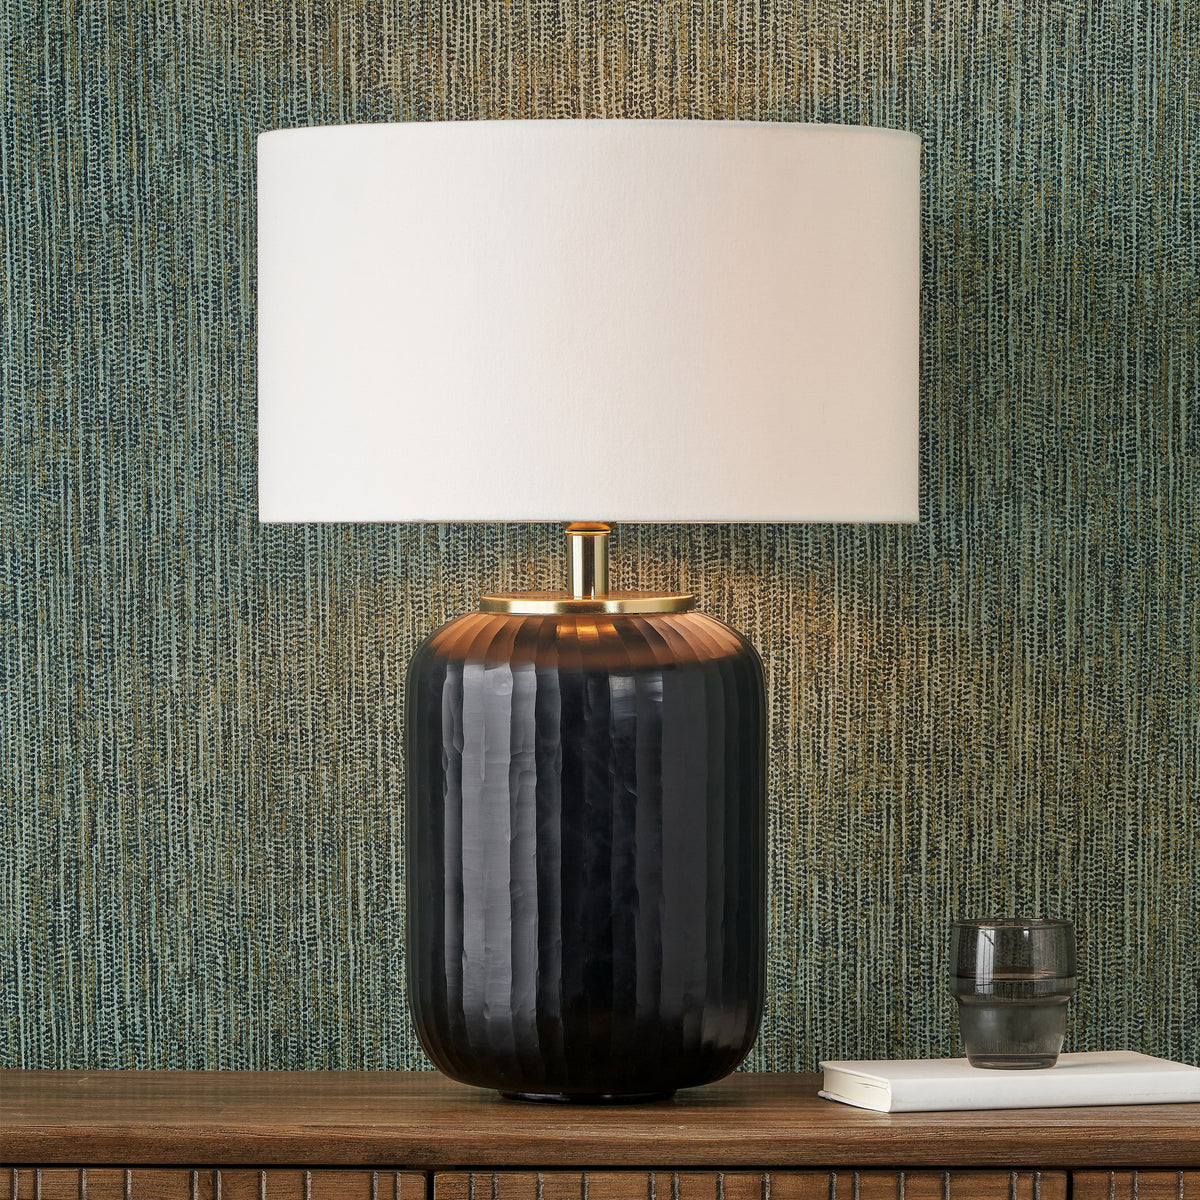 Eva Matt Black Cold Cut Stripe Glass Table Lamp for living room or bedroom